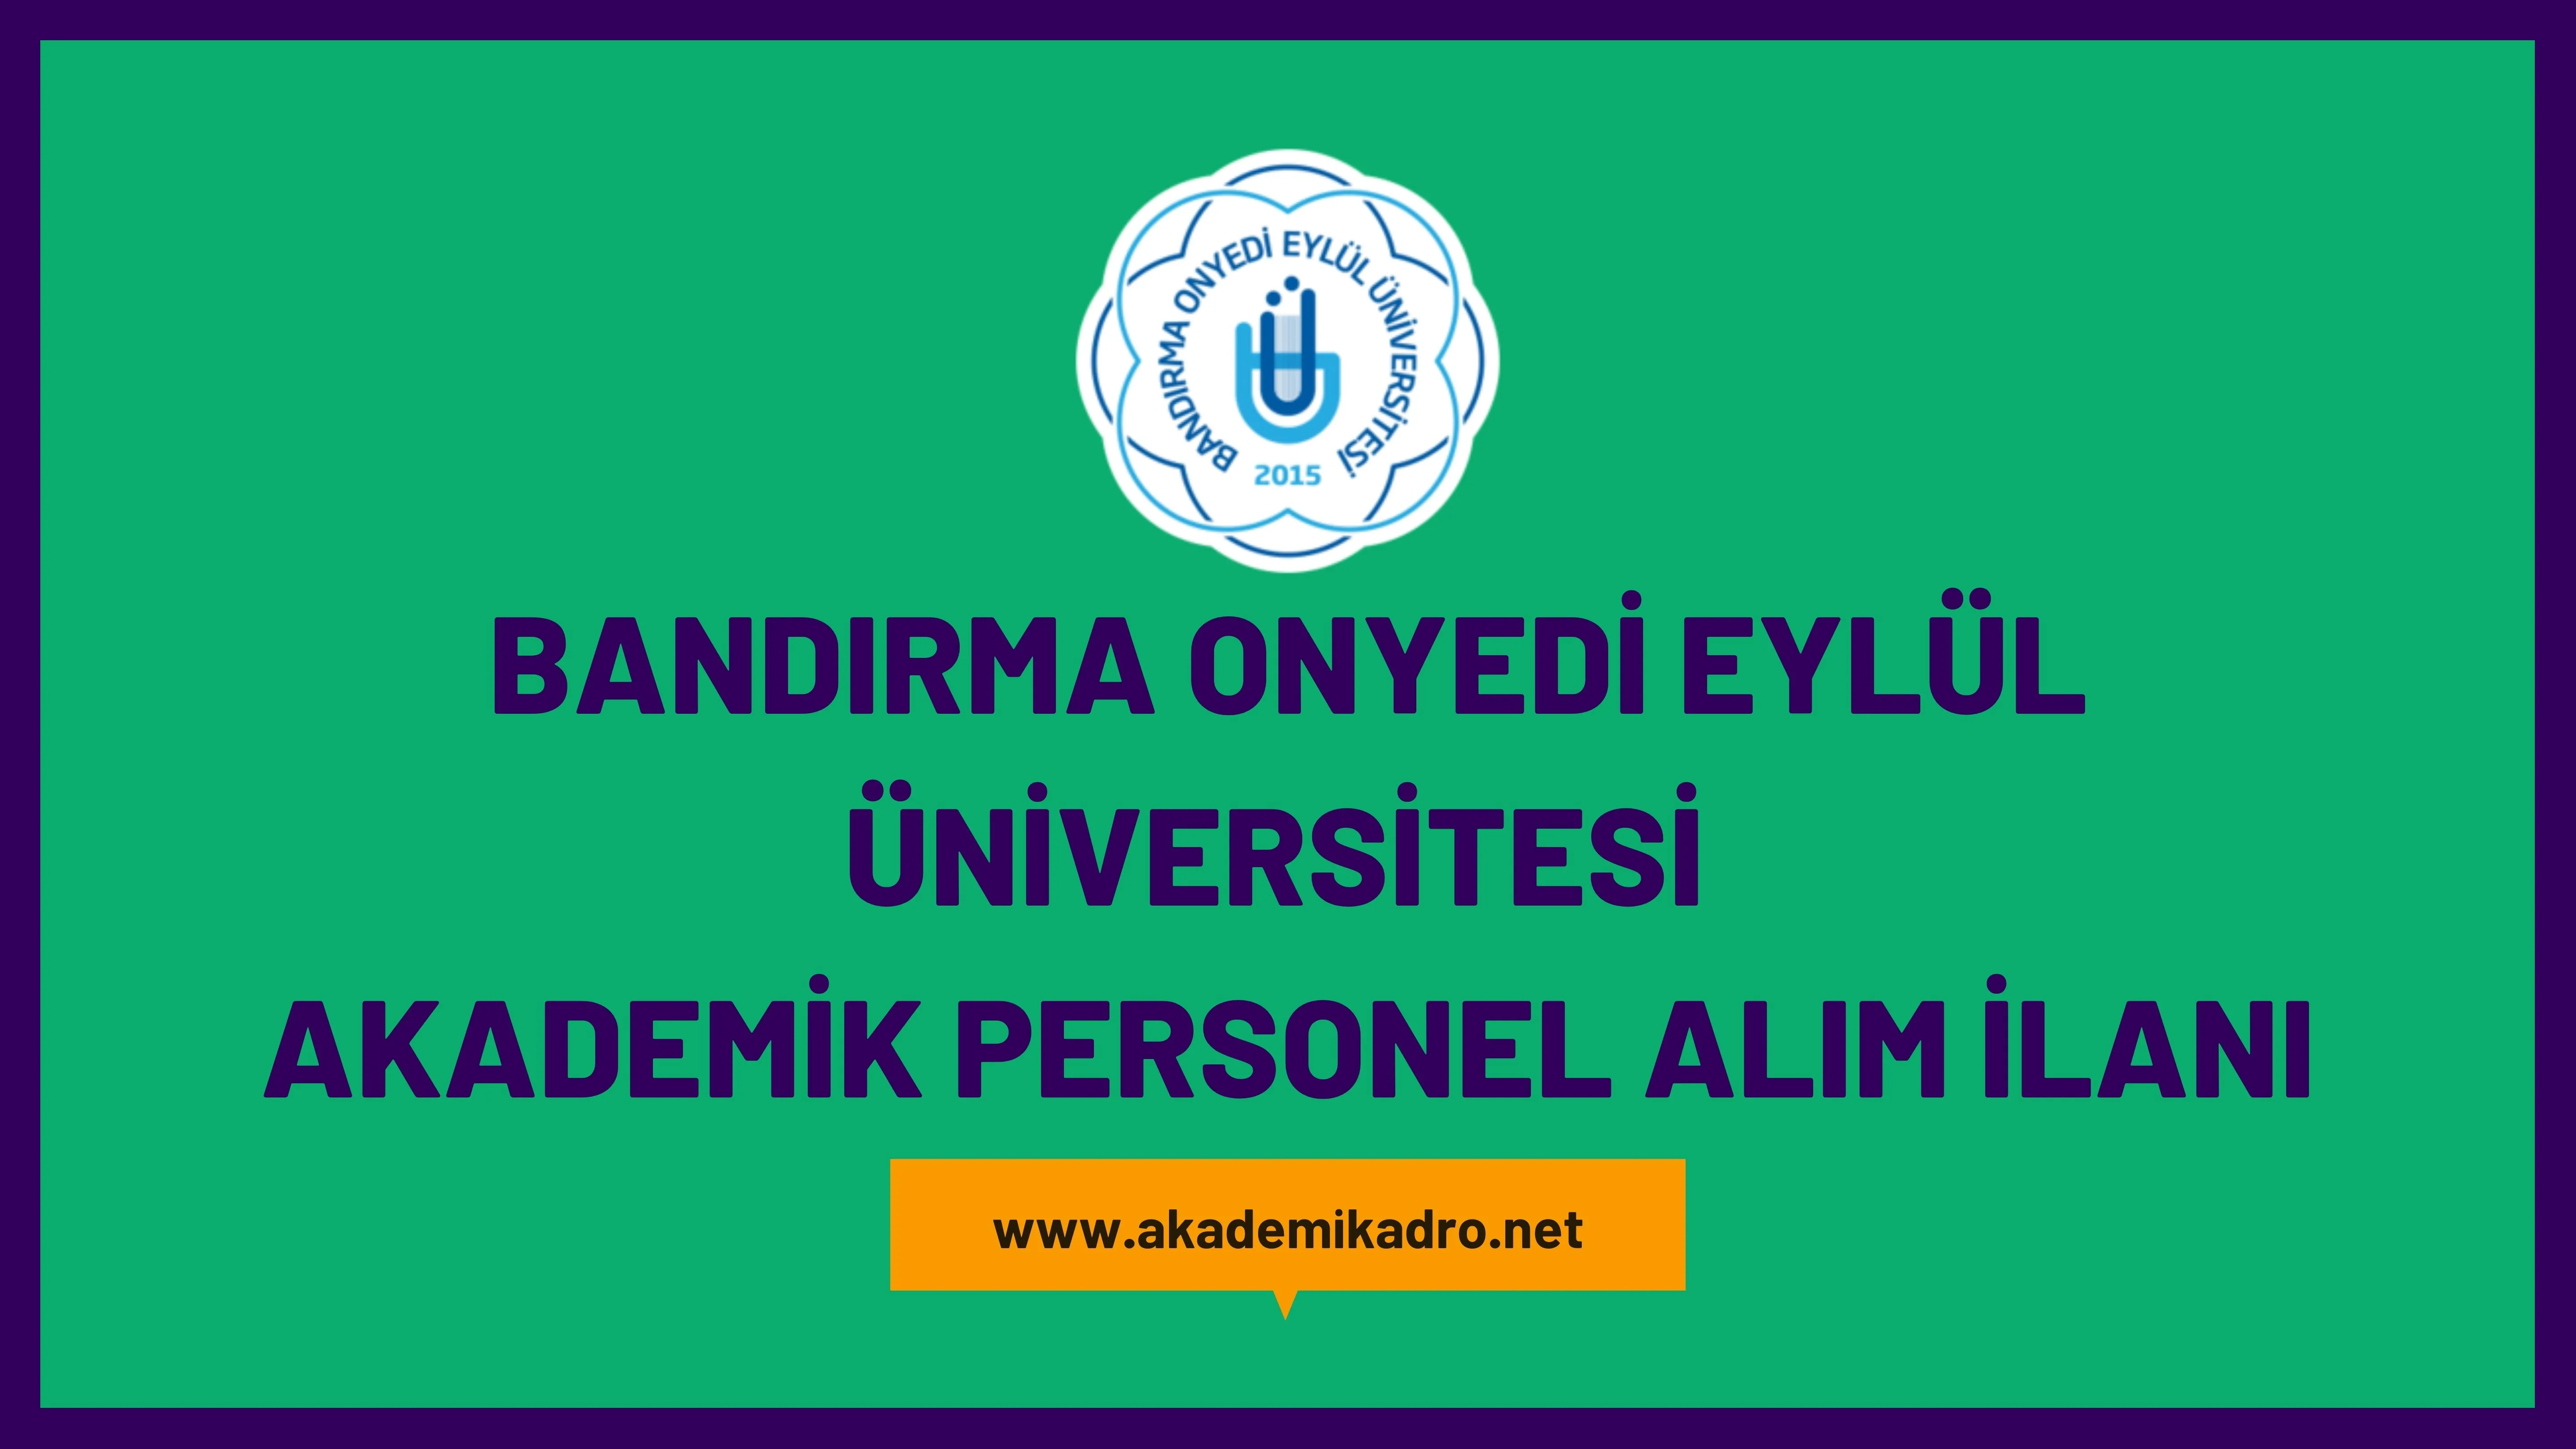 Bandırma Onyedi Eylül Üniversitesi 21 akademik personel alacak.